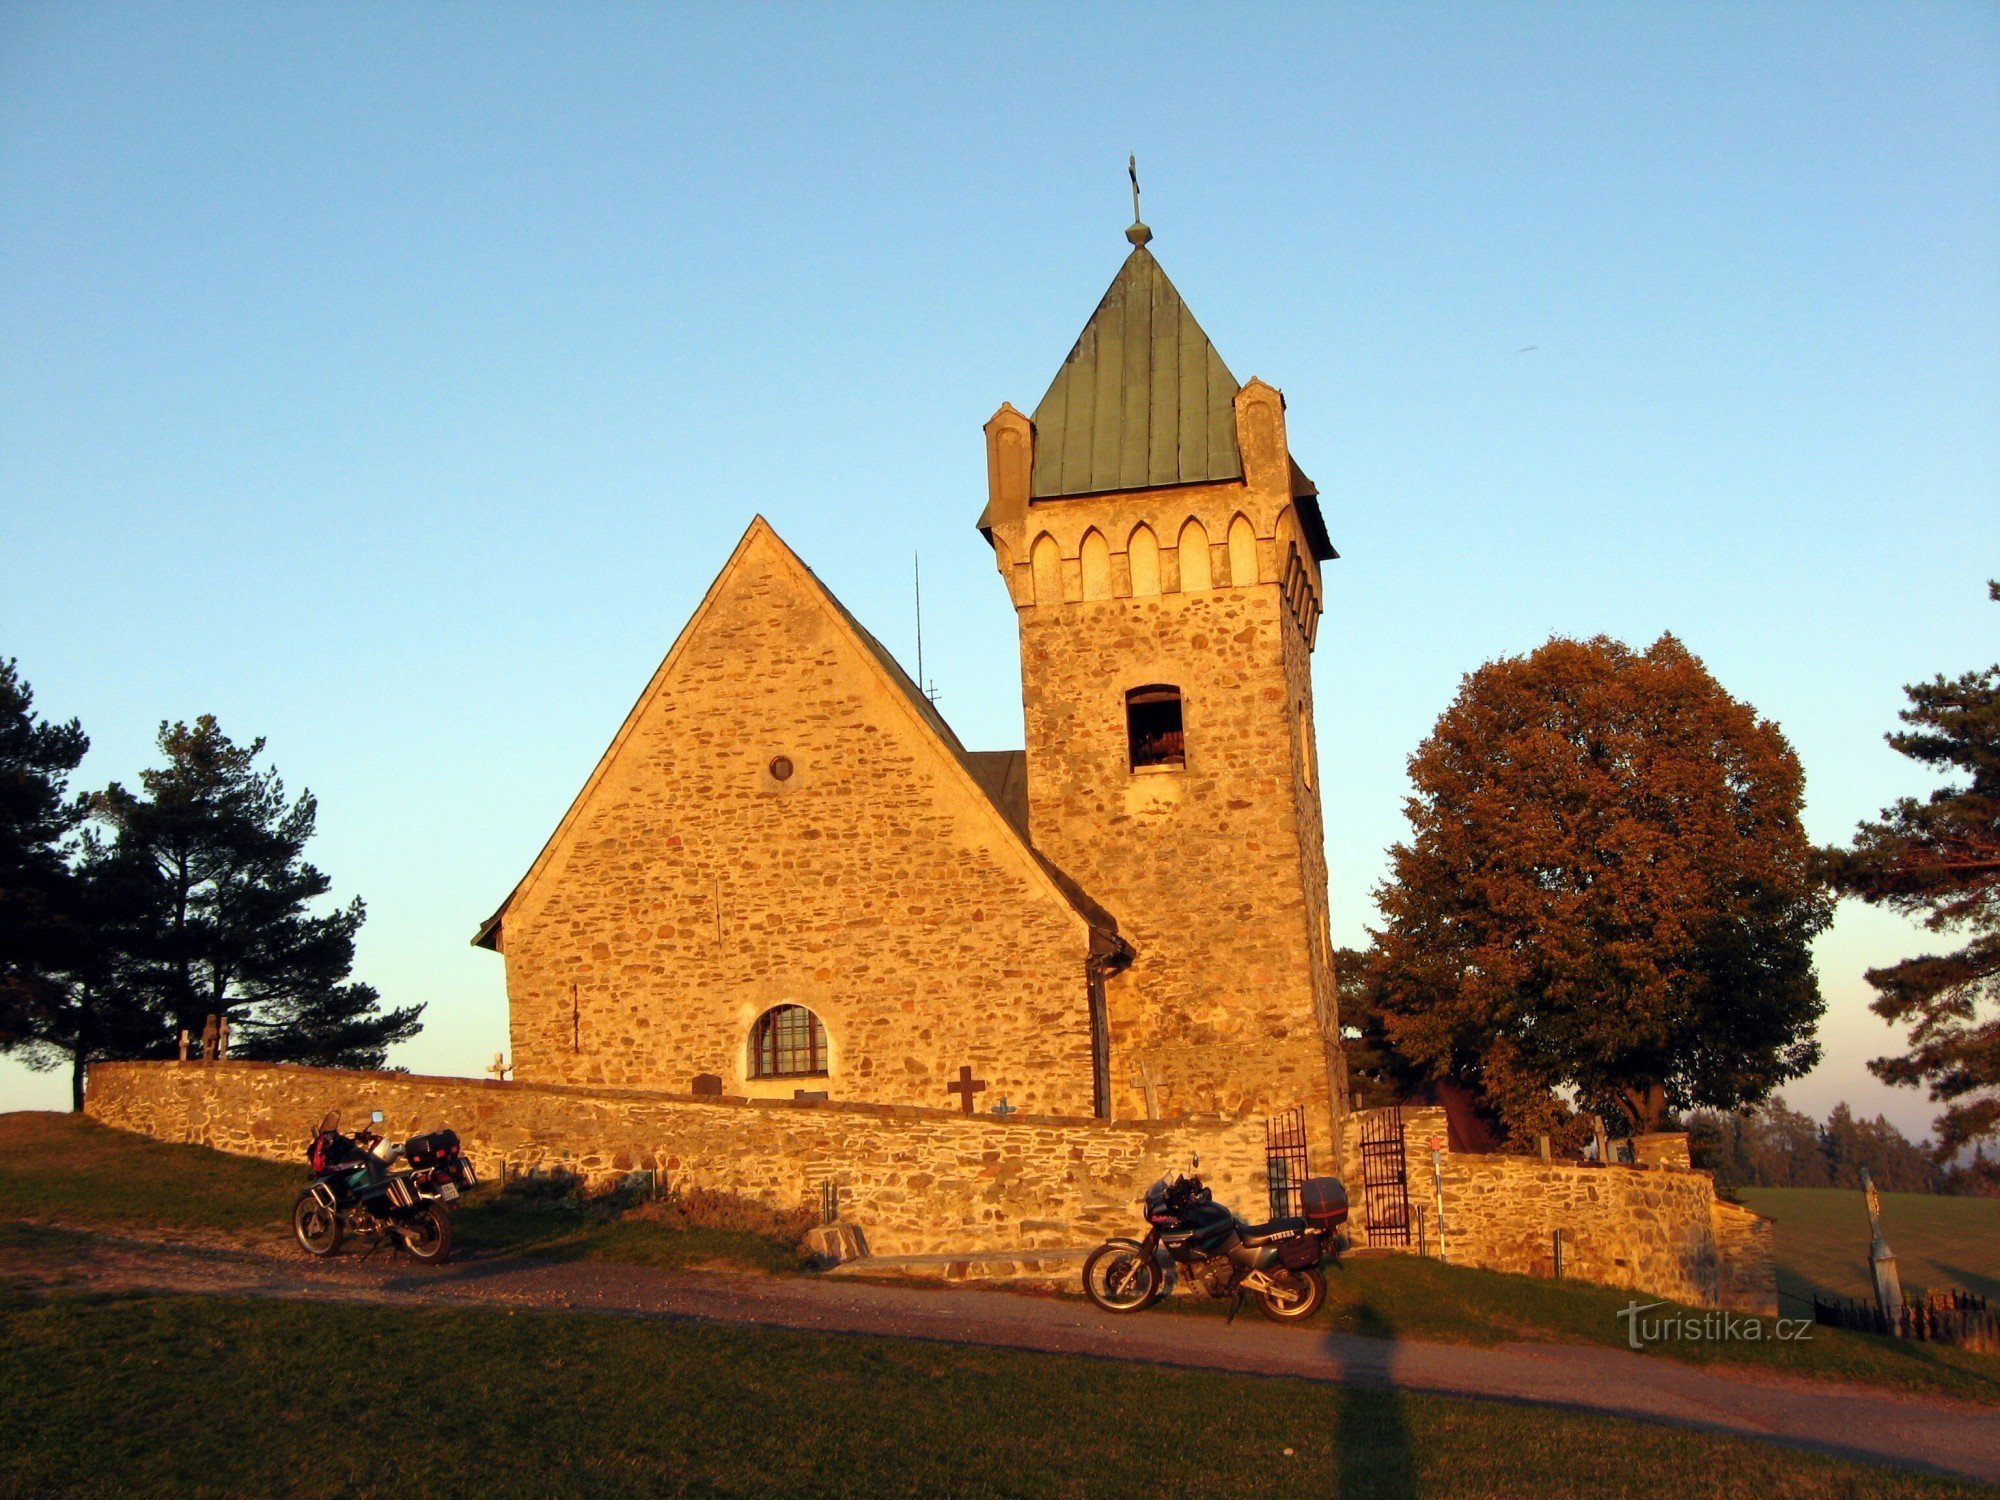 Vítochov - St. Michael's Church at sunset